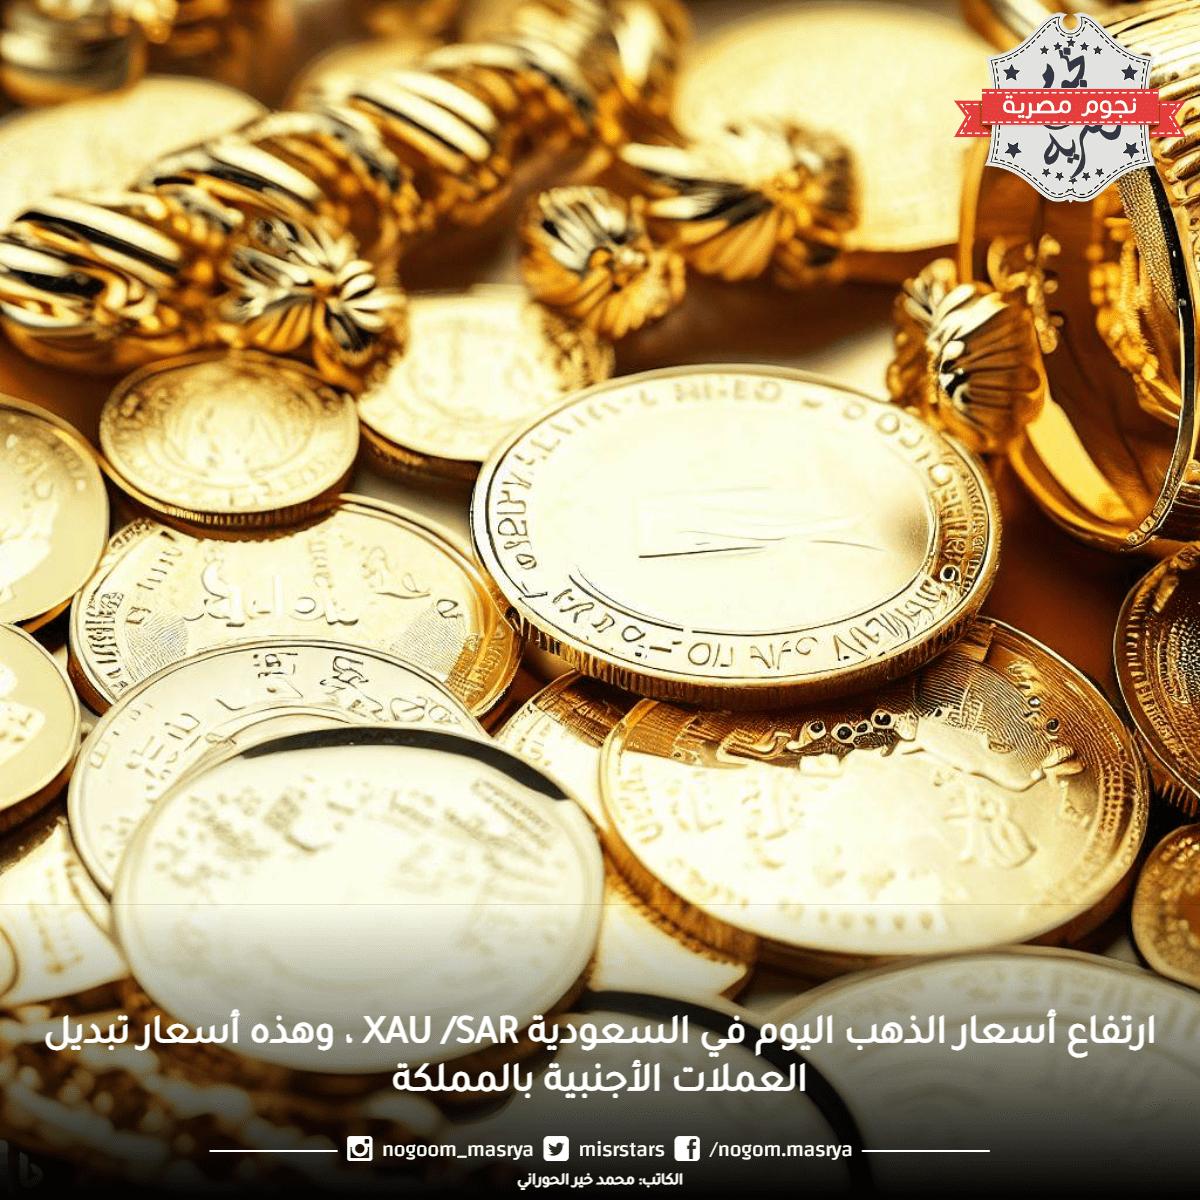 ارتفاع أسعار الذهب اليوم في السعودية Xau /Sar ، وهذه أسعار تبديل العملات الأجنبية بالمملكة